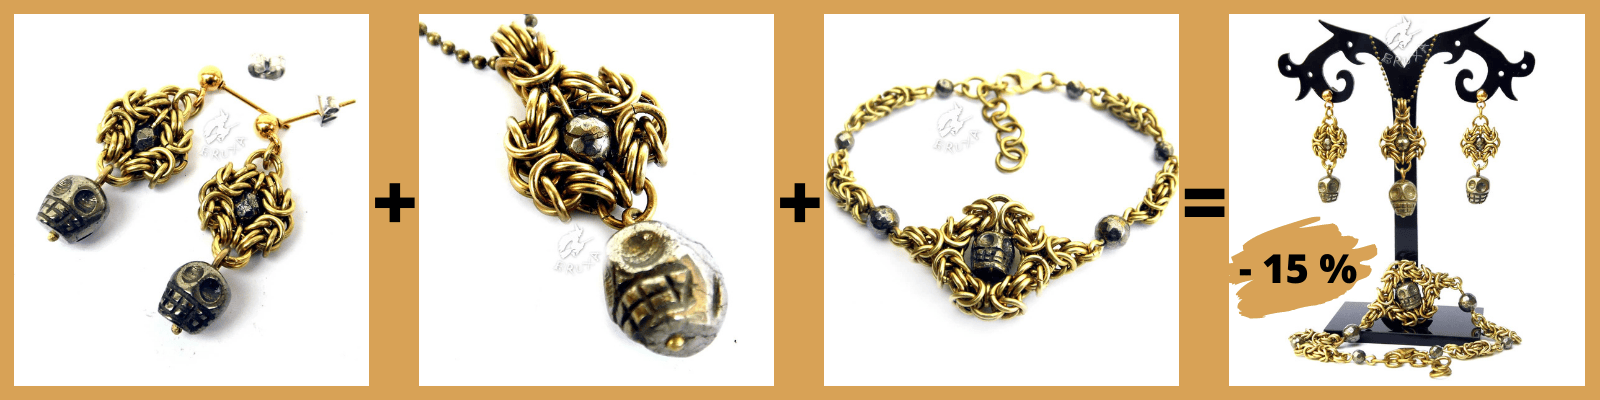 Kolczyki+naszyjnik+bransoletka=zestaw biżuterii mosiężnej z pirytowymi czaszkami 15% taniej